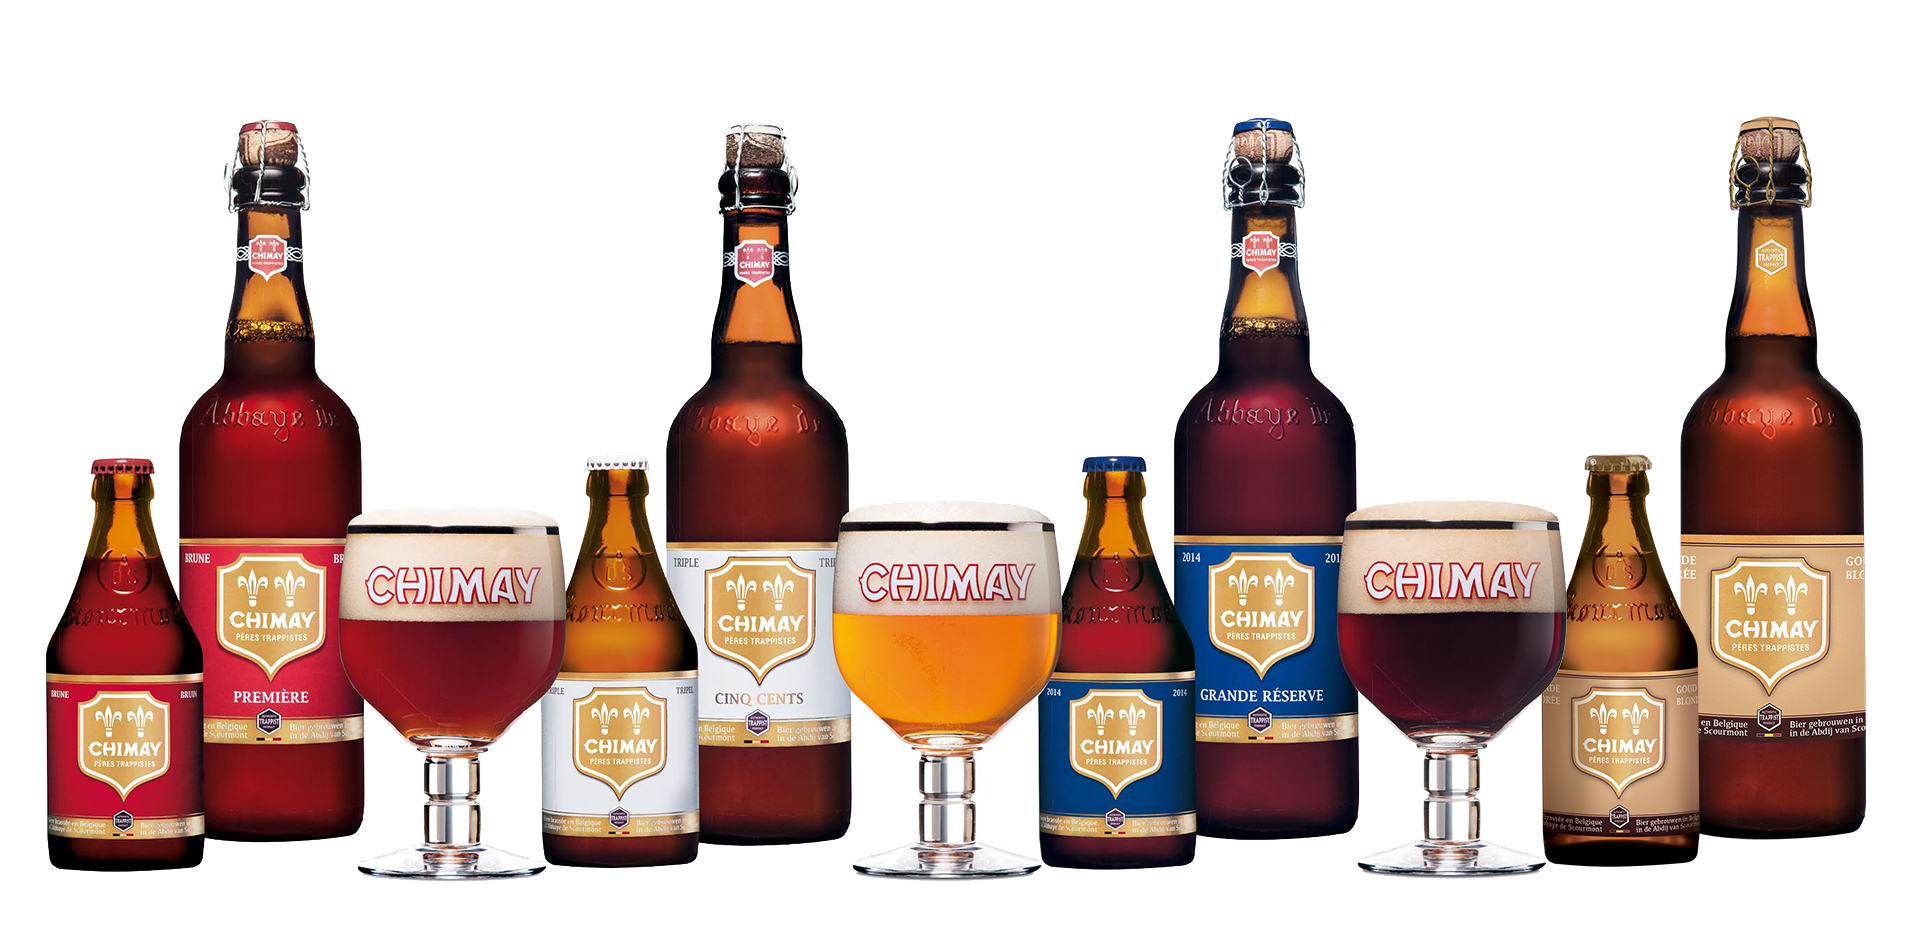 nectar-utrecht-pils-bier-brouwerij-belgië-chimay-assortiment